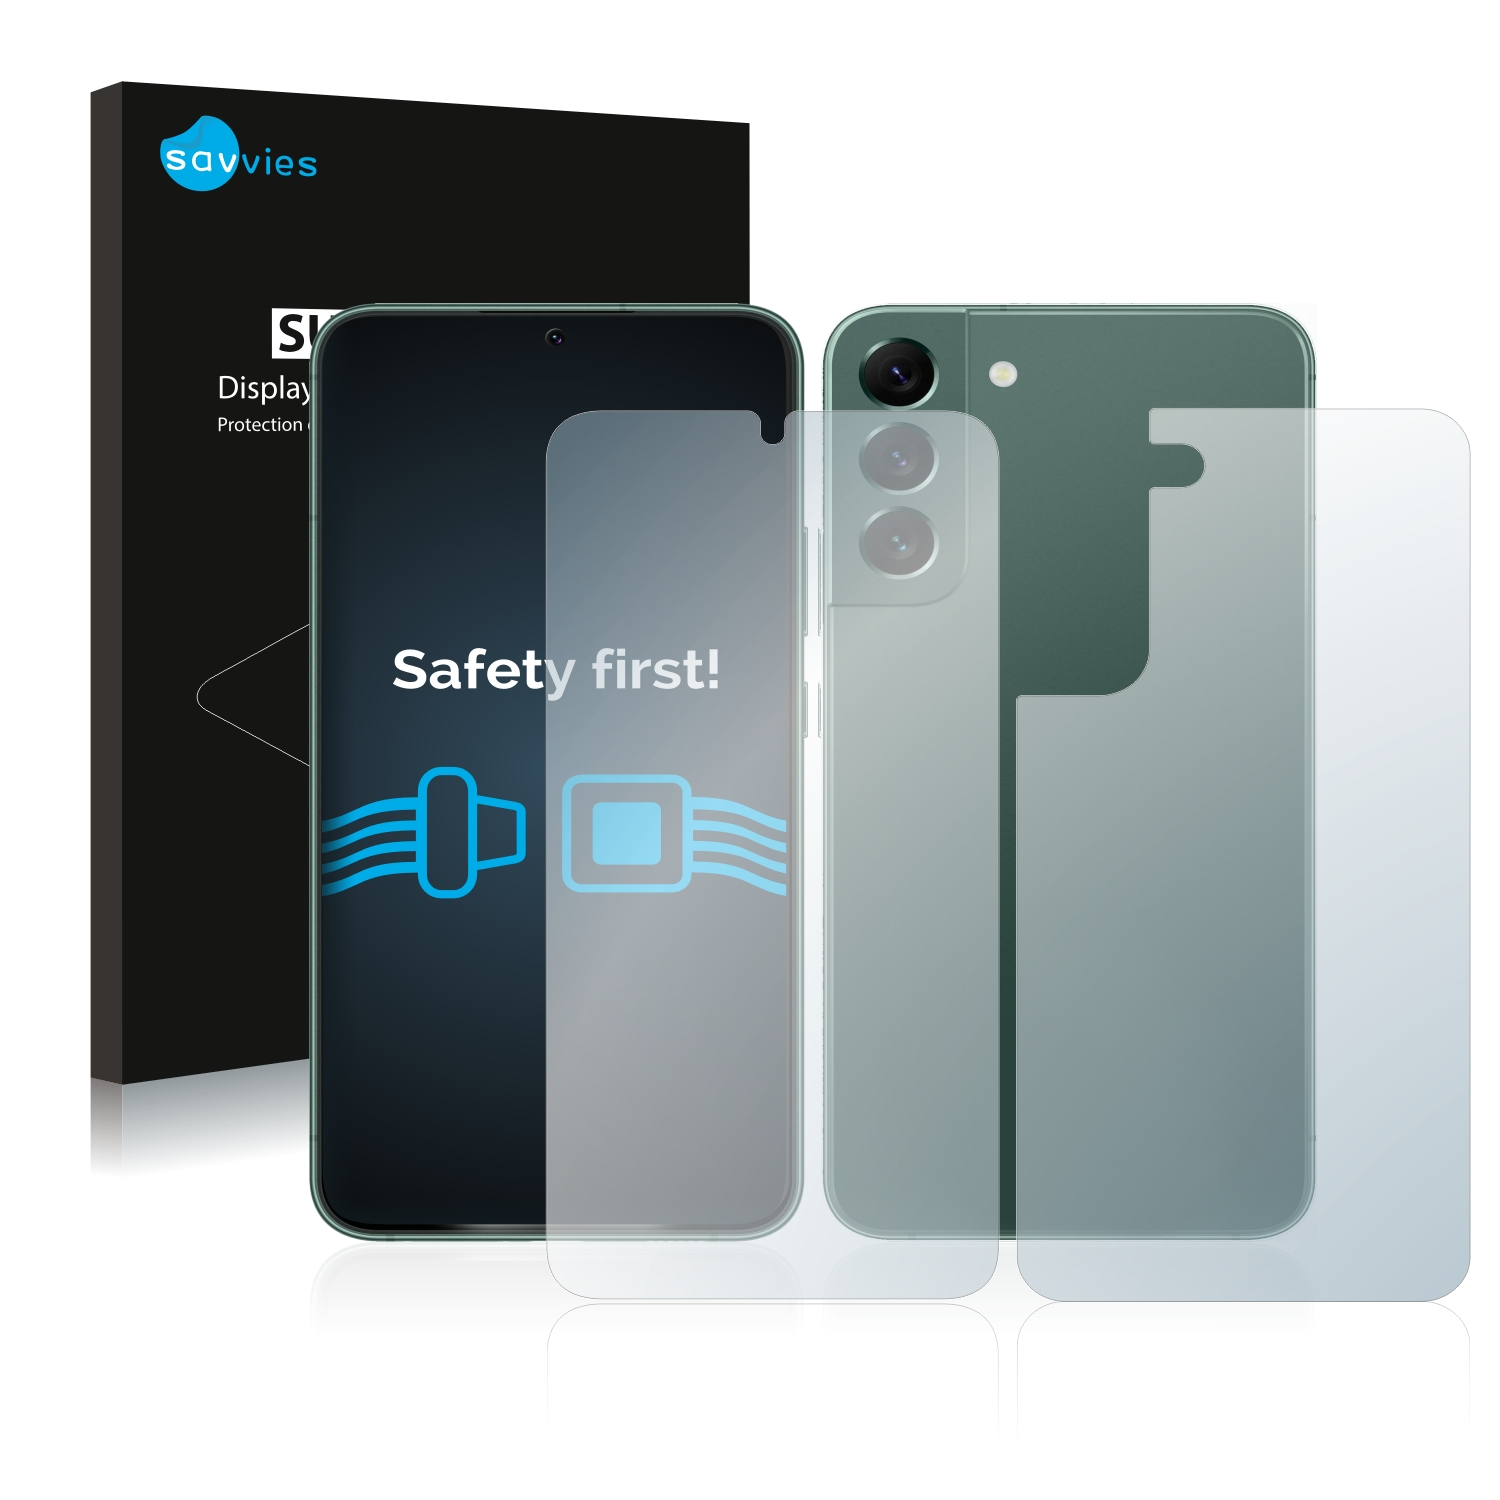 SAVVIES 18x klare Galaxy Plus S22 5G) Schutzfolie(für Samsung